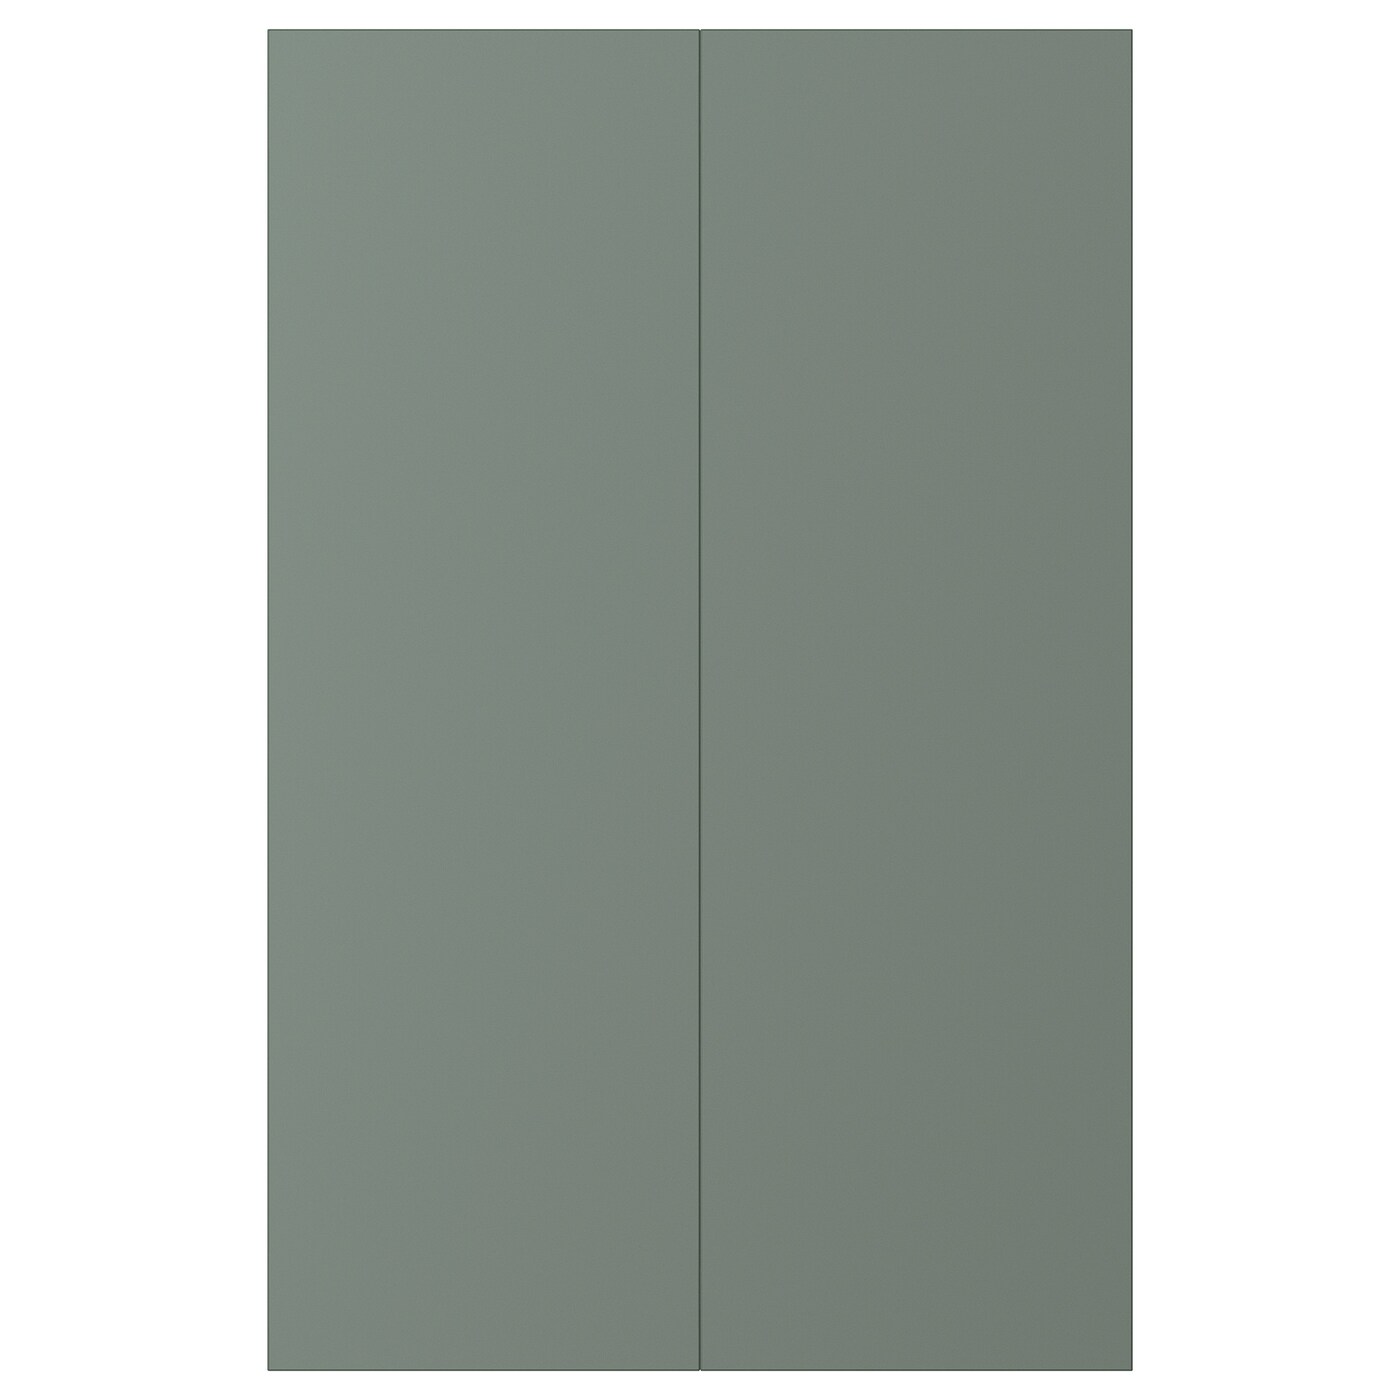 Фронтальная панель для ящика, 2 шт. - IKEA BODARP, 80х25 см, серо-зеленый, БОДАРП ИКЕА